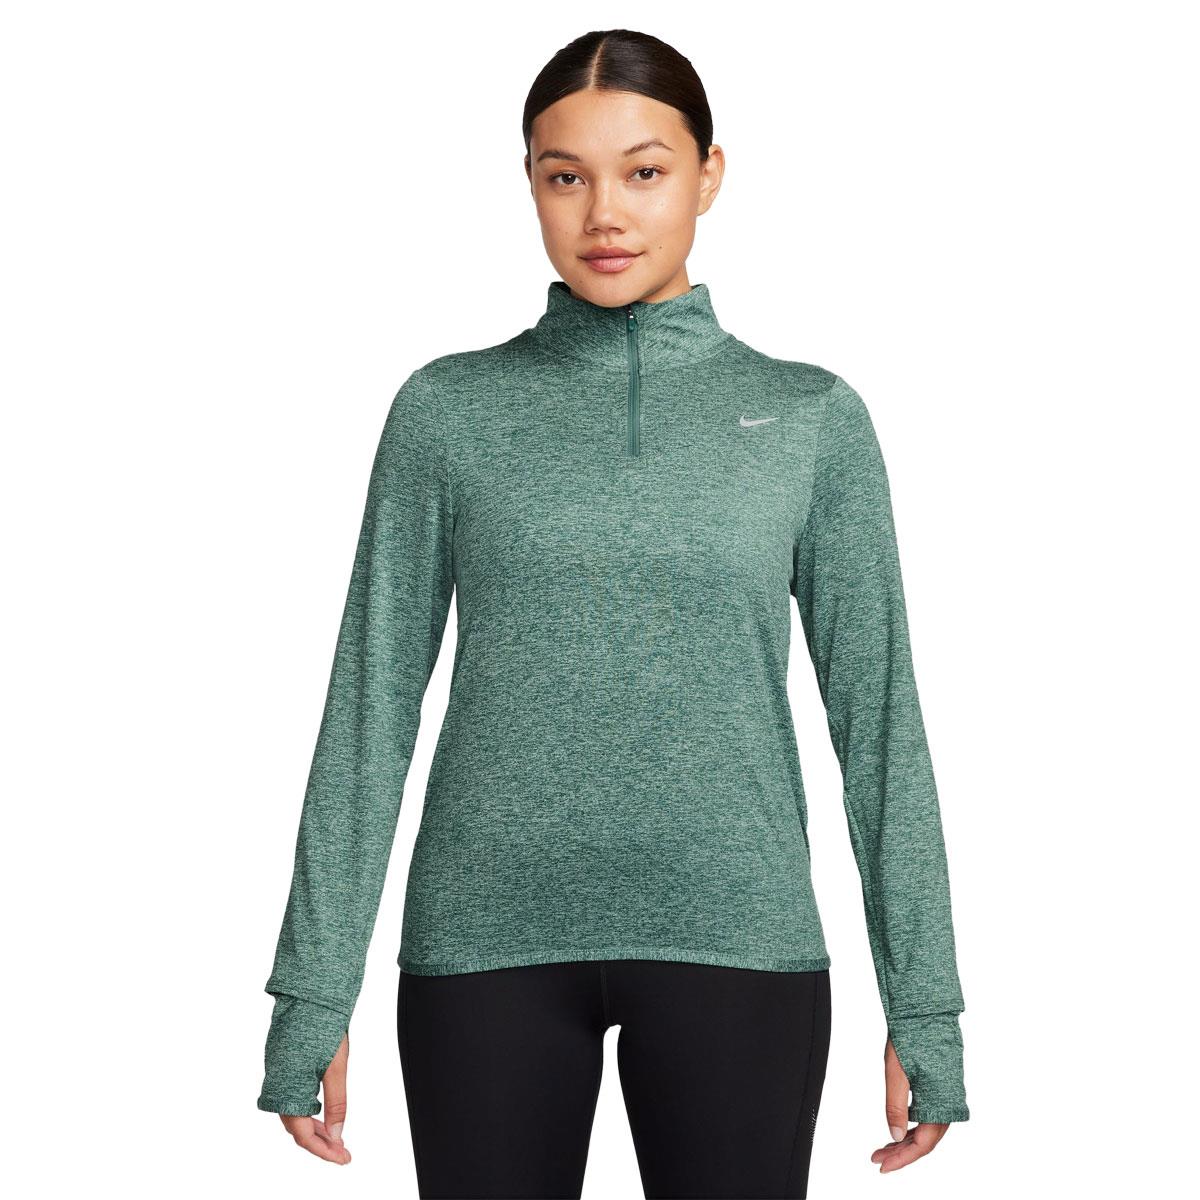 Nike Womens Dri-FIT Swift Element UV 1/2 Zip Running Top Green XL